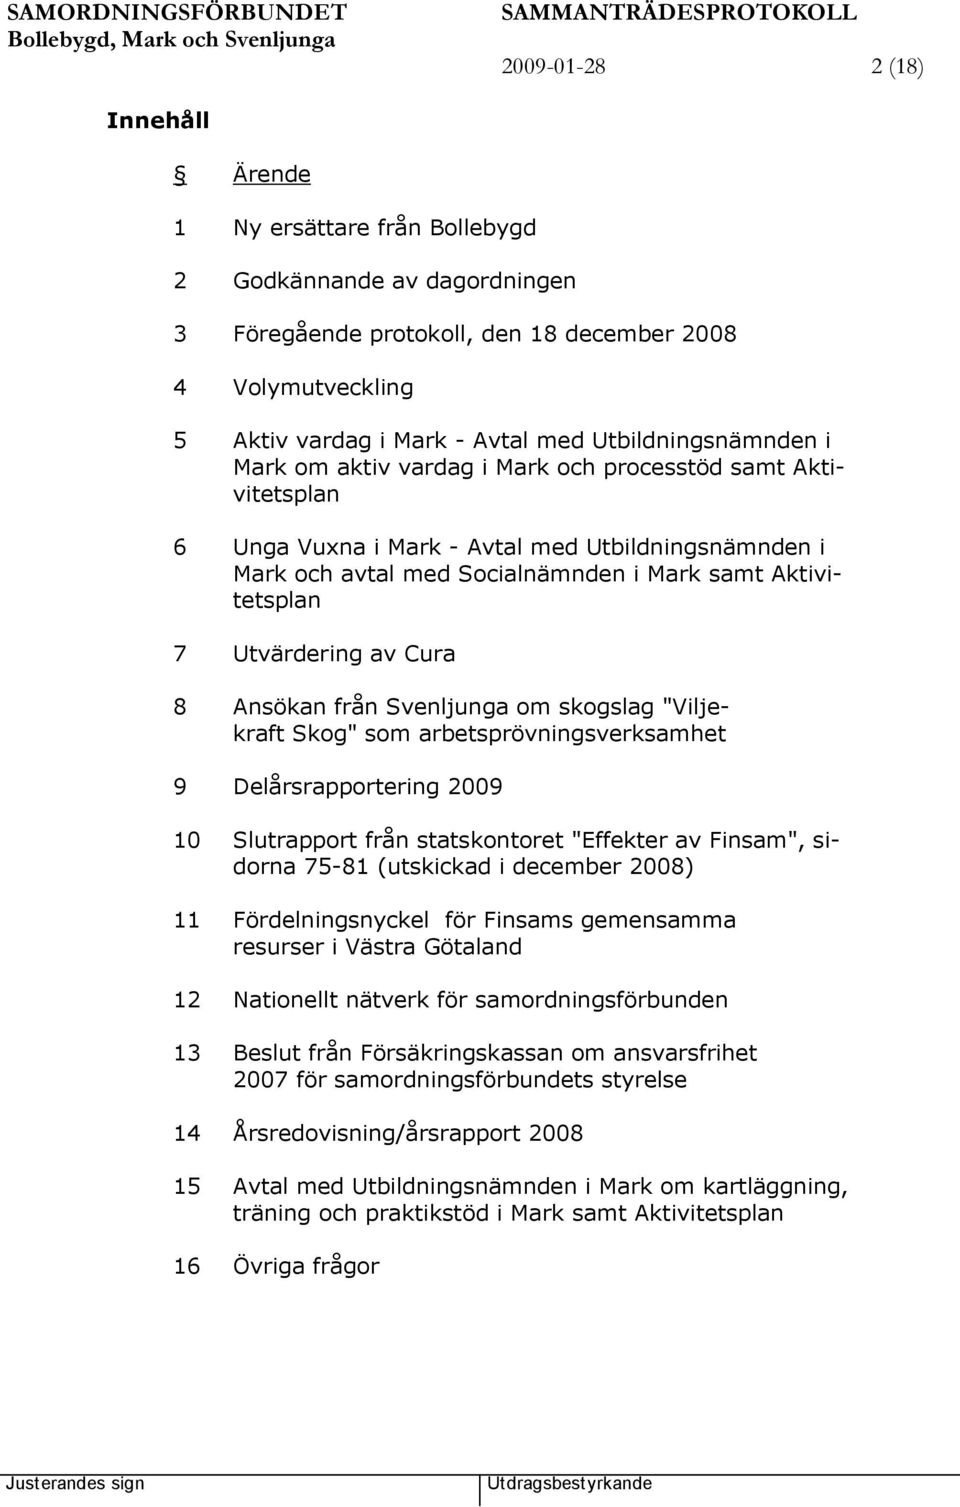 Utvärdering av Cura 8 Ansökan från Svenljunga om skogslag "Viljekraft Skog" som arbetsprövningsverksamhet 9 Delårsrapportering 2009 10 Slutrapport från statskontoret "Effekter av Finsam", sidorna